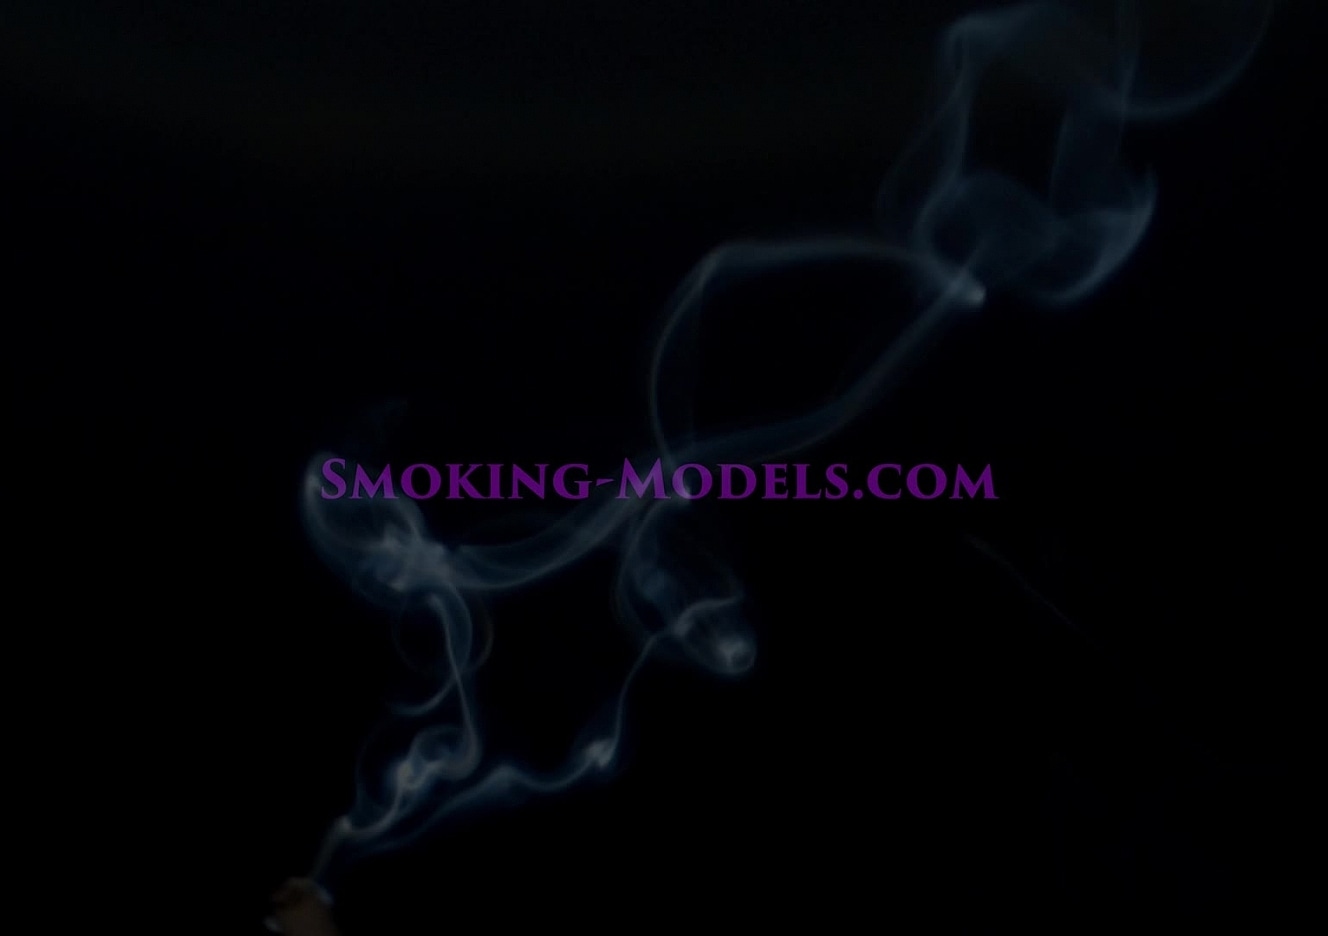 content/SMOKINGM-V-3008/0.jpg